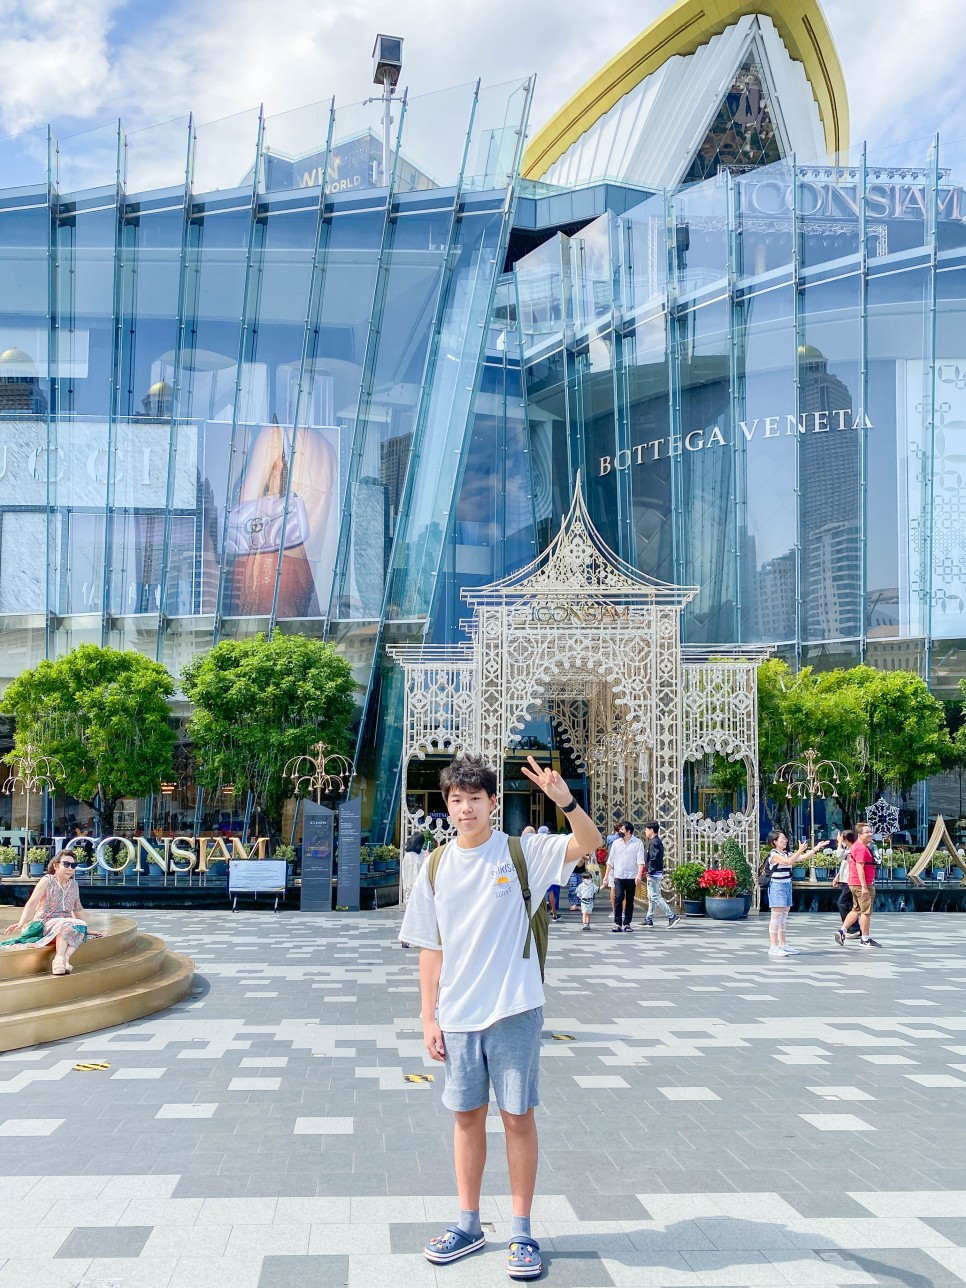 방콕 가볼만한곳 방콕쇼핑몰 아이콘시암 슈퍼리치 태국 환전, 애플, 쏙시암